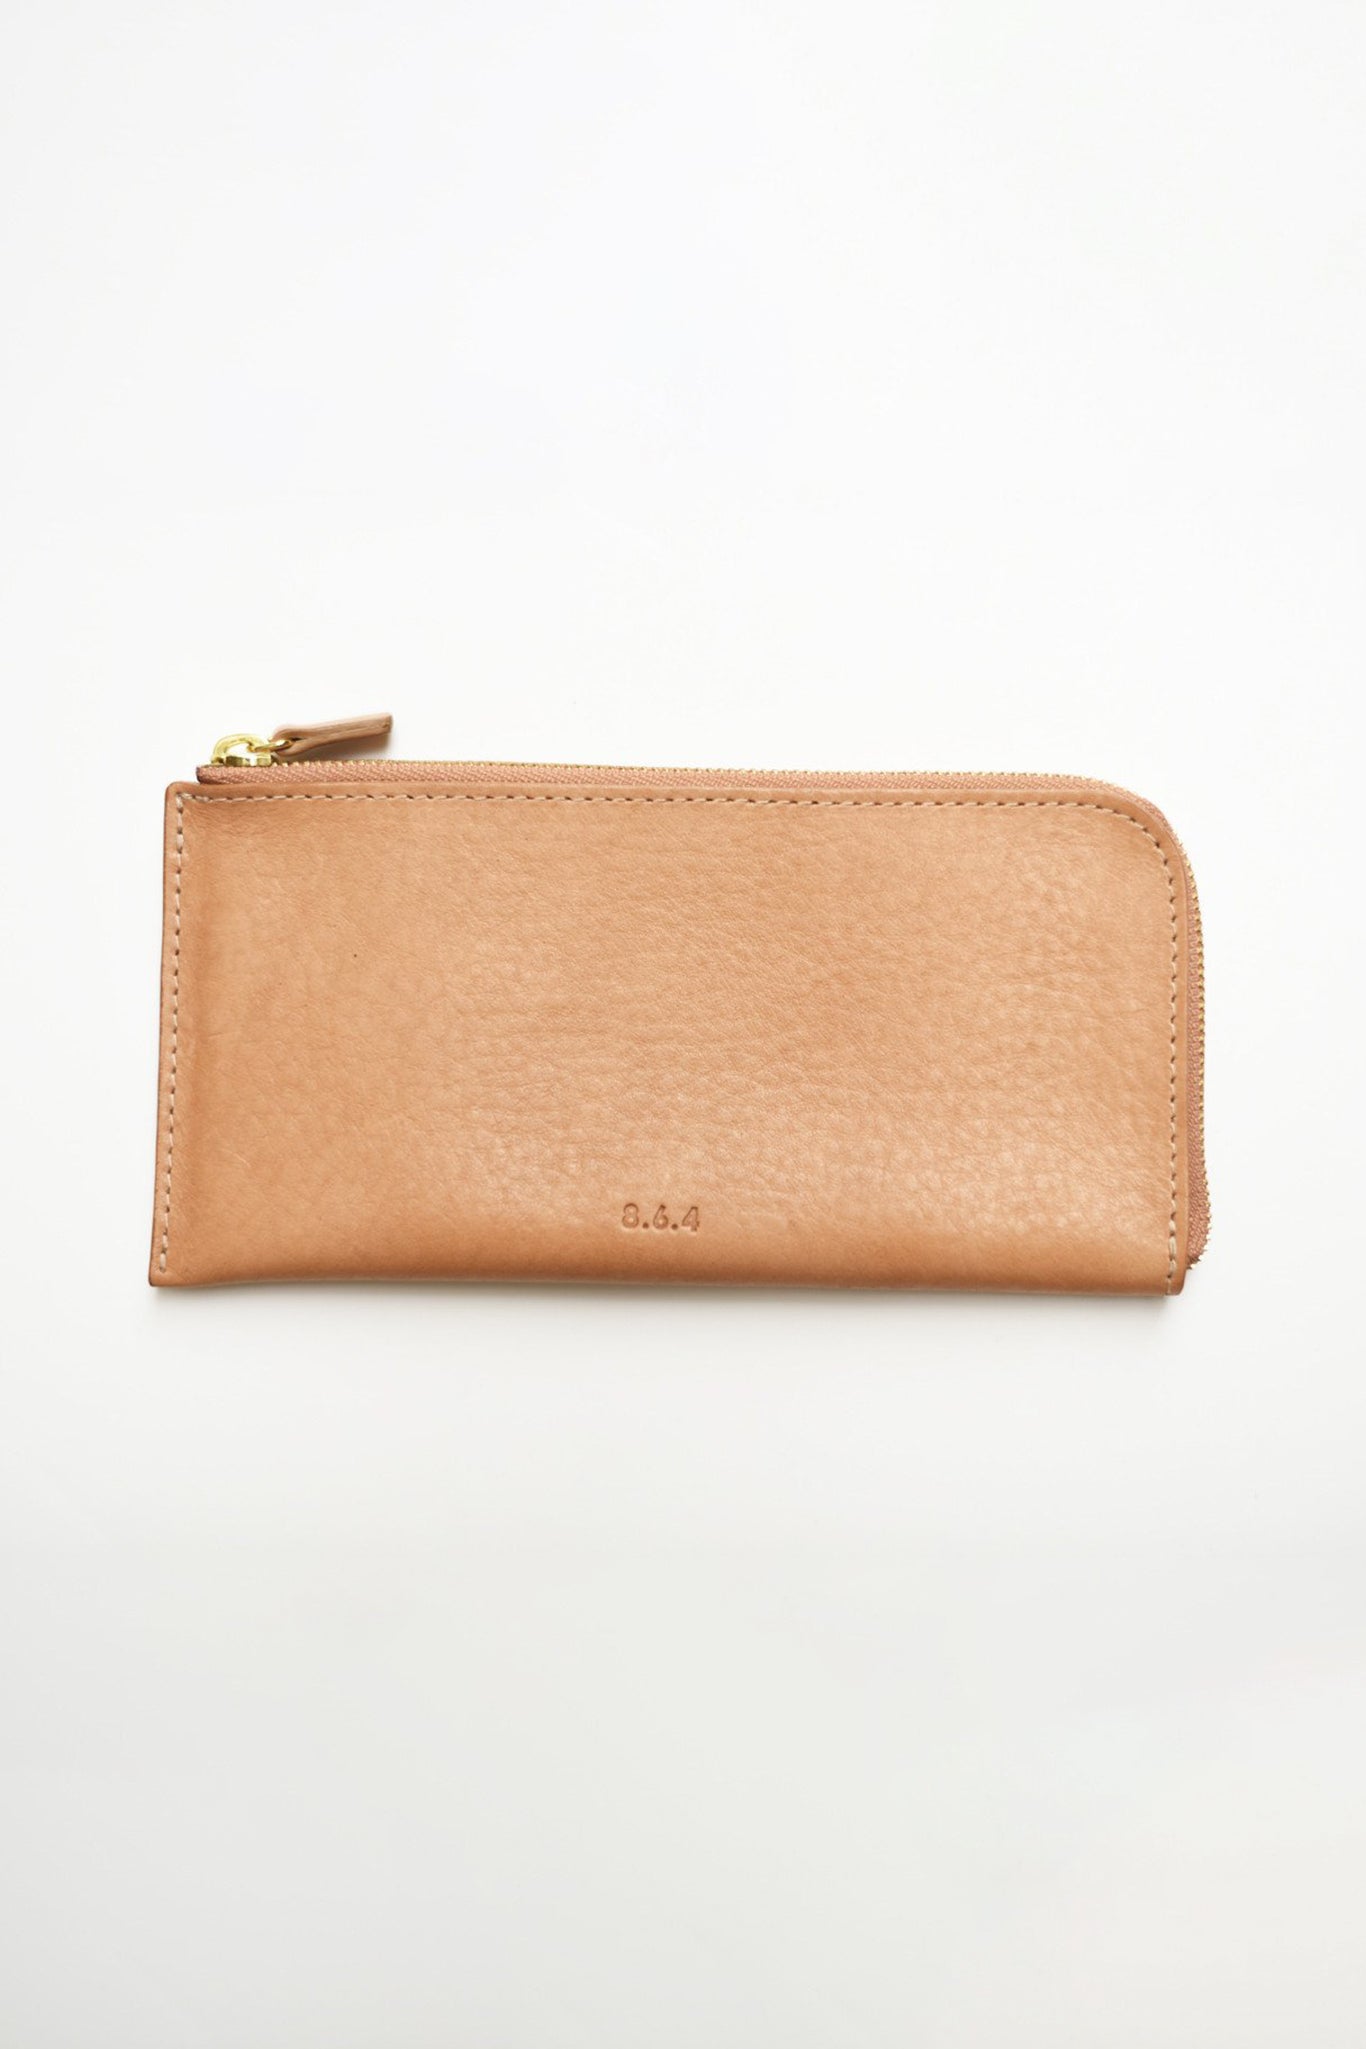 8.6.4 Zip Wallet Long - Tan